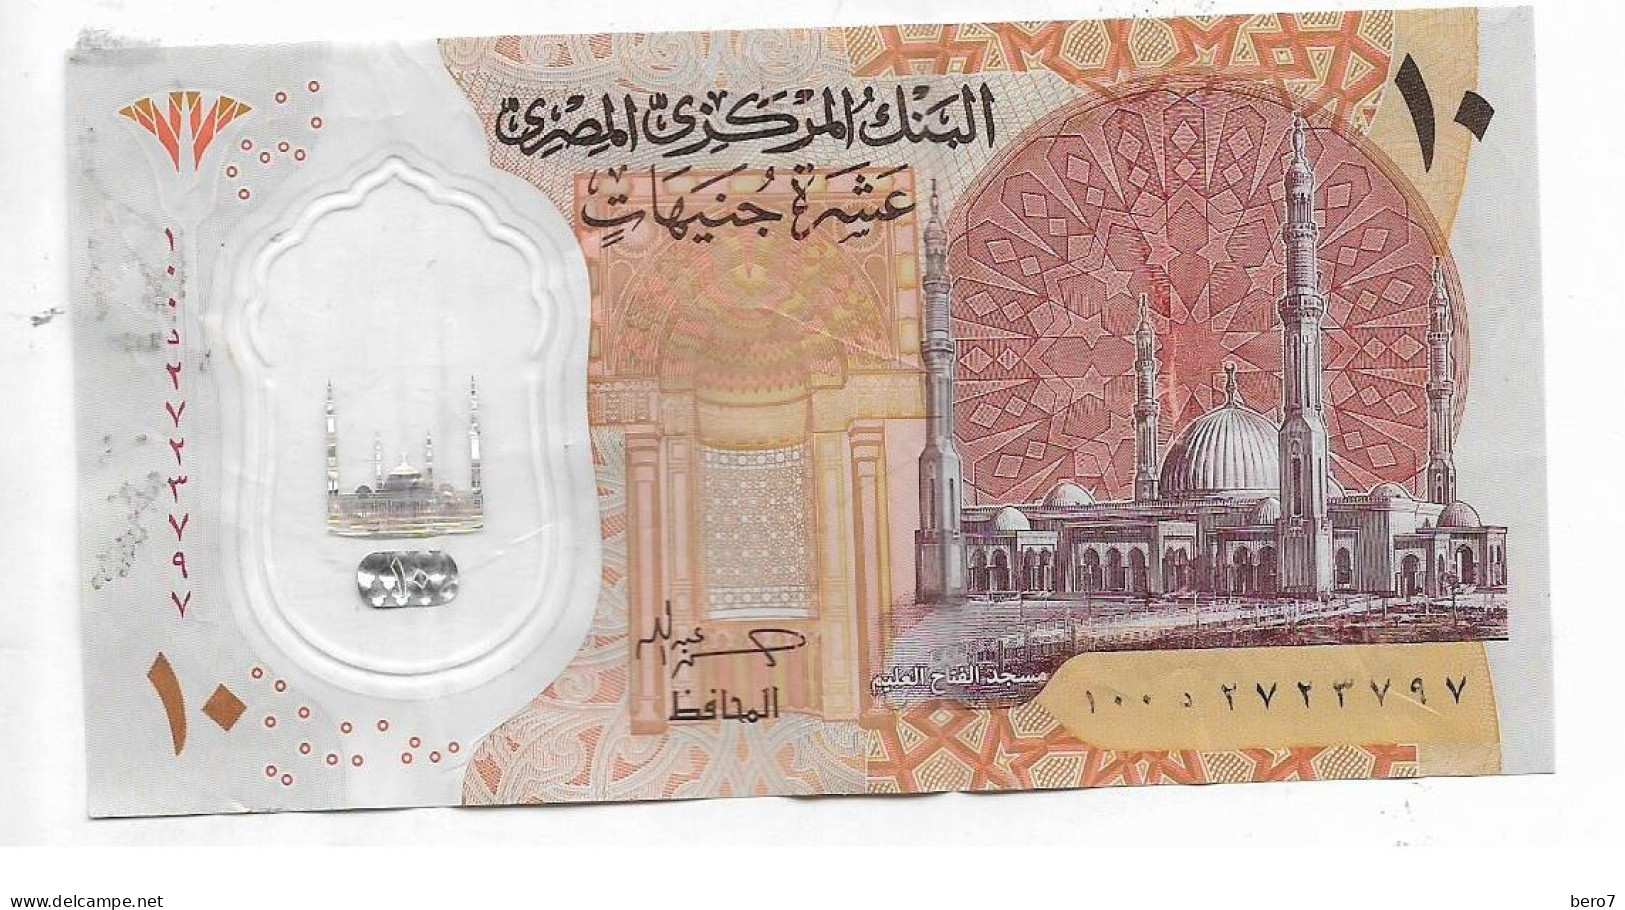 Egypt 10 Pounds Polymer Replacement - Circuated Hassan Abdallah [Circulated]  (Egypte) (Egitto) (Ägypten) (Egipto) - Aegypten